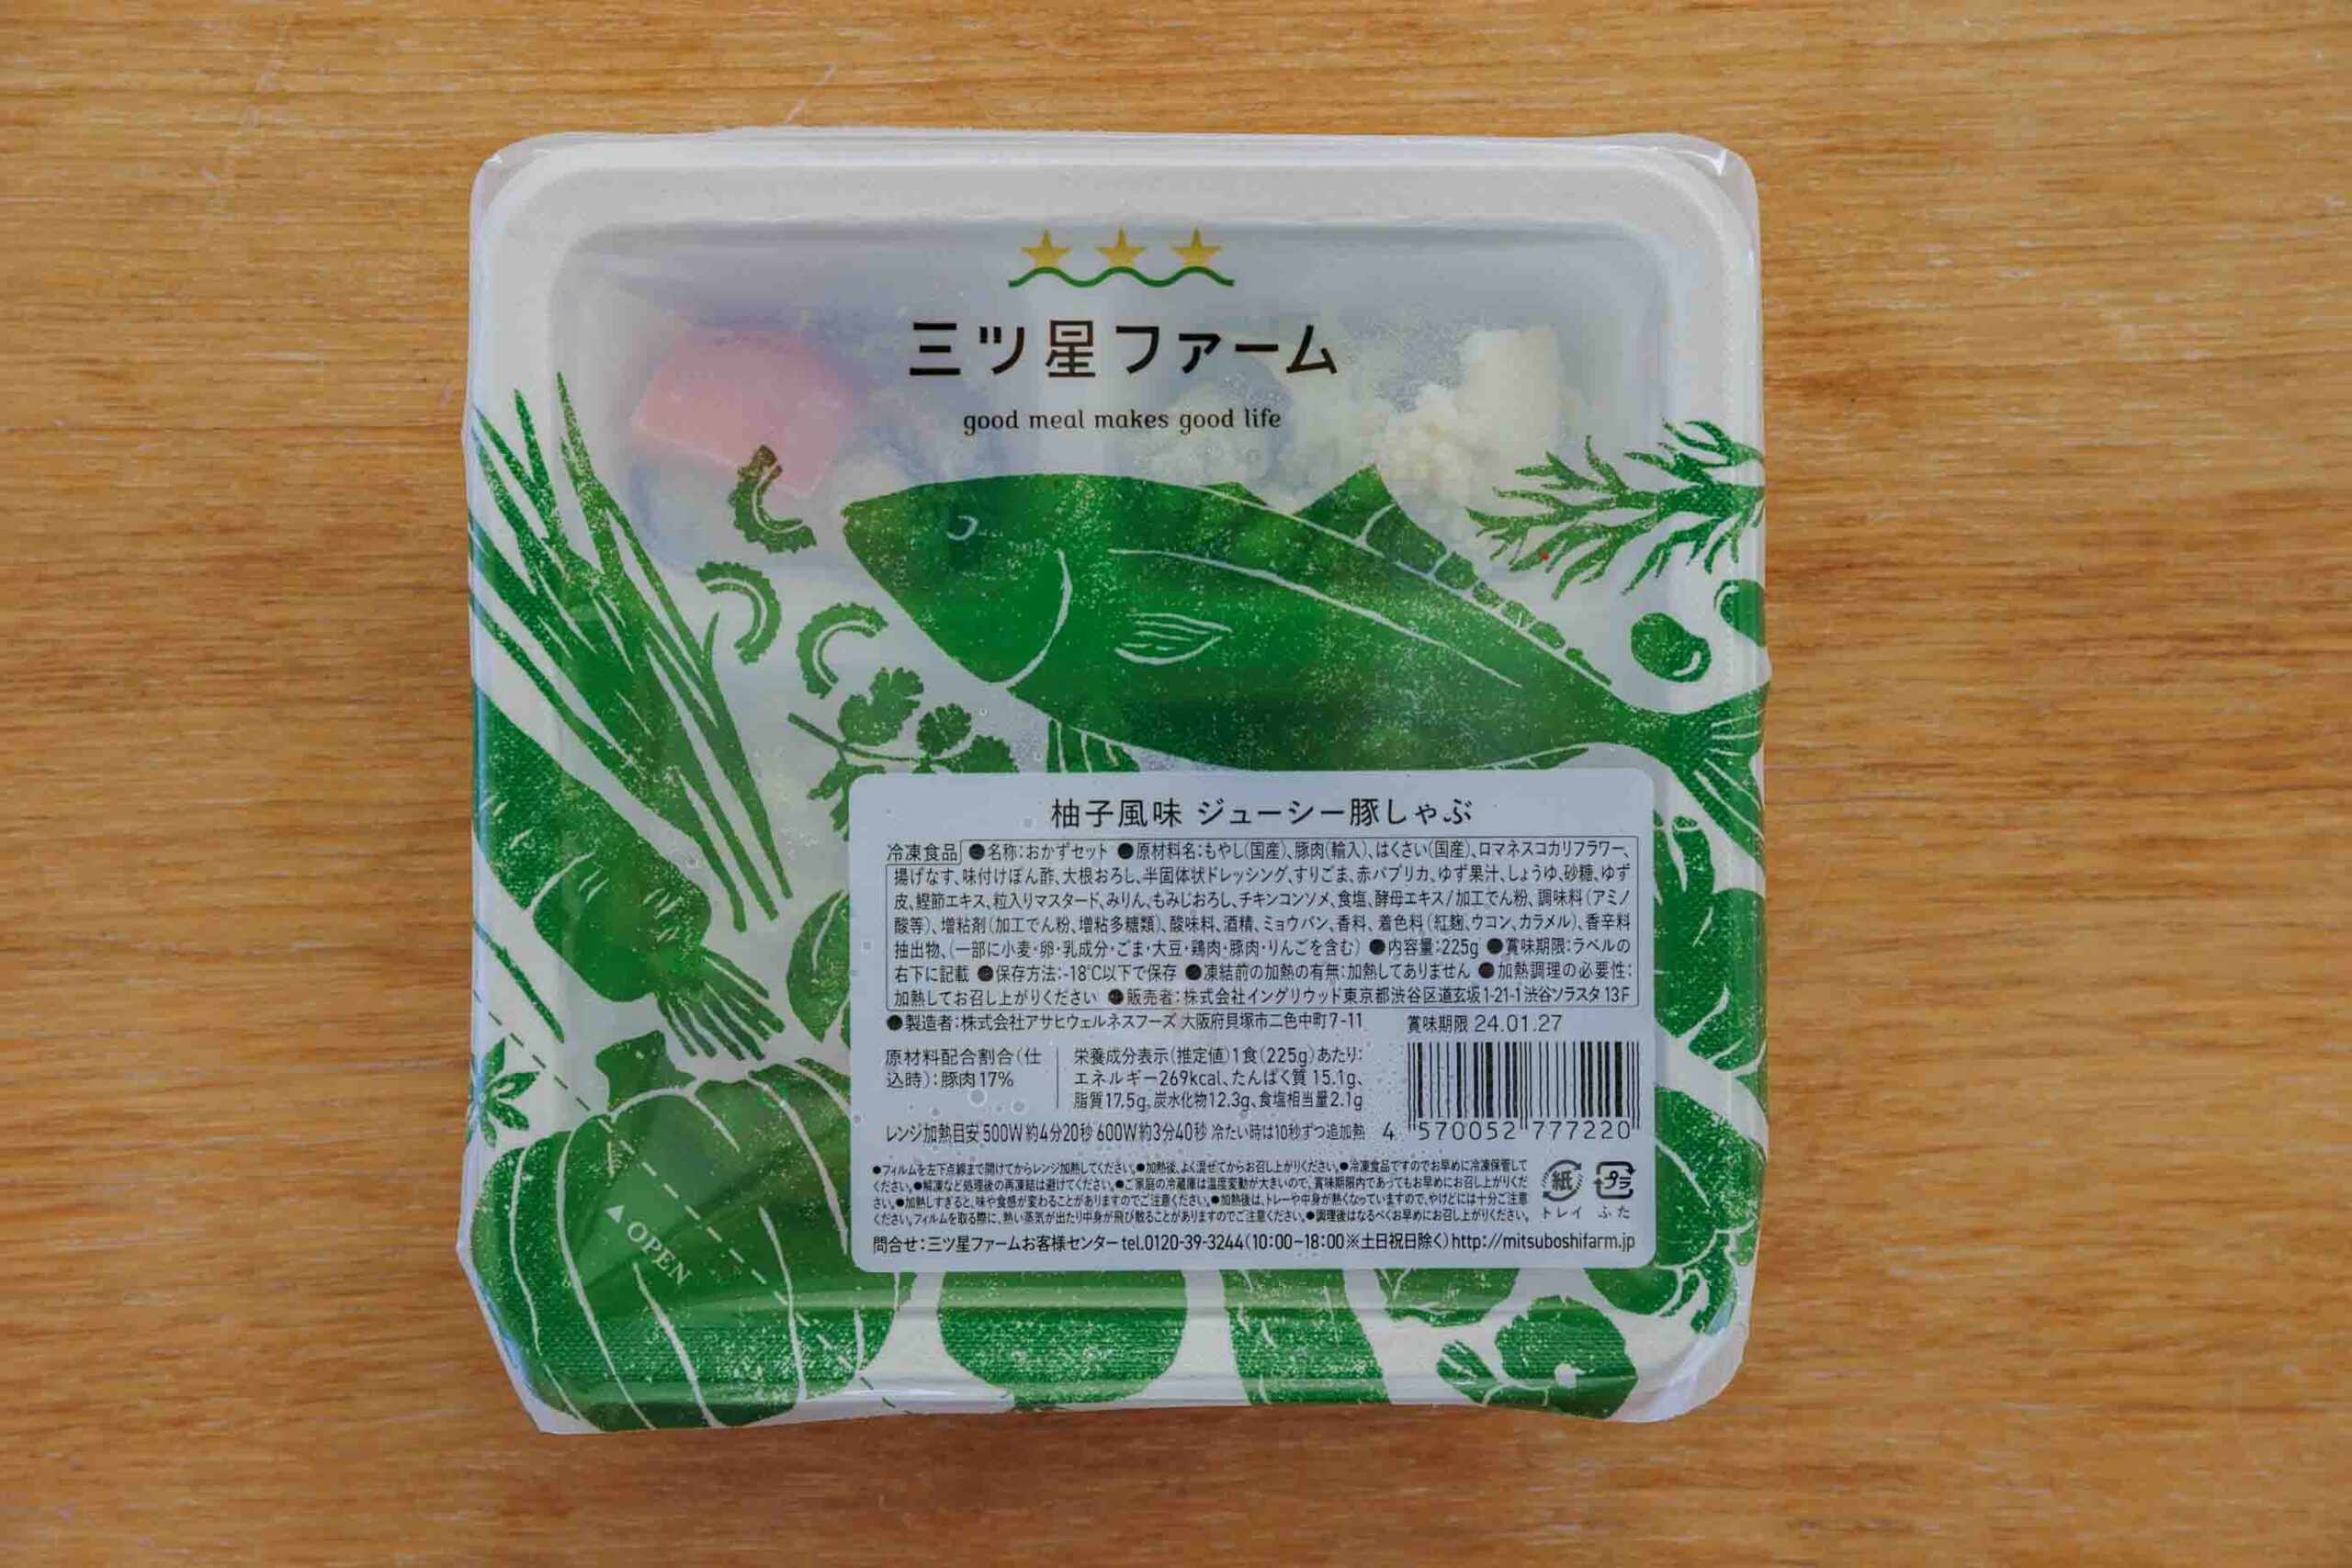 三ツ星ファーム「柚子風味ジューシー豚しゃぶ」のパッケージ写真